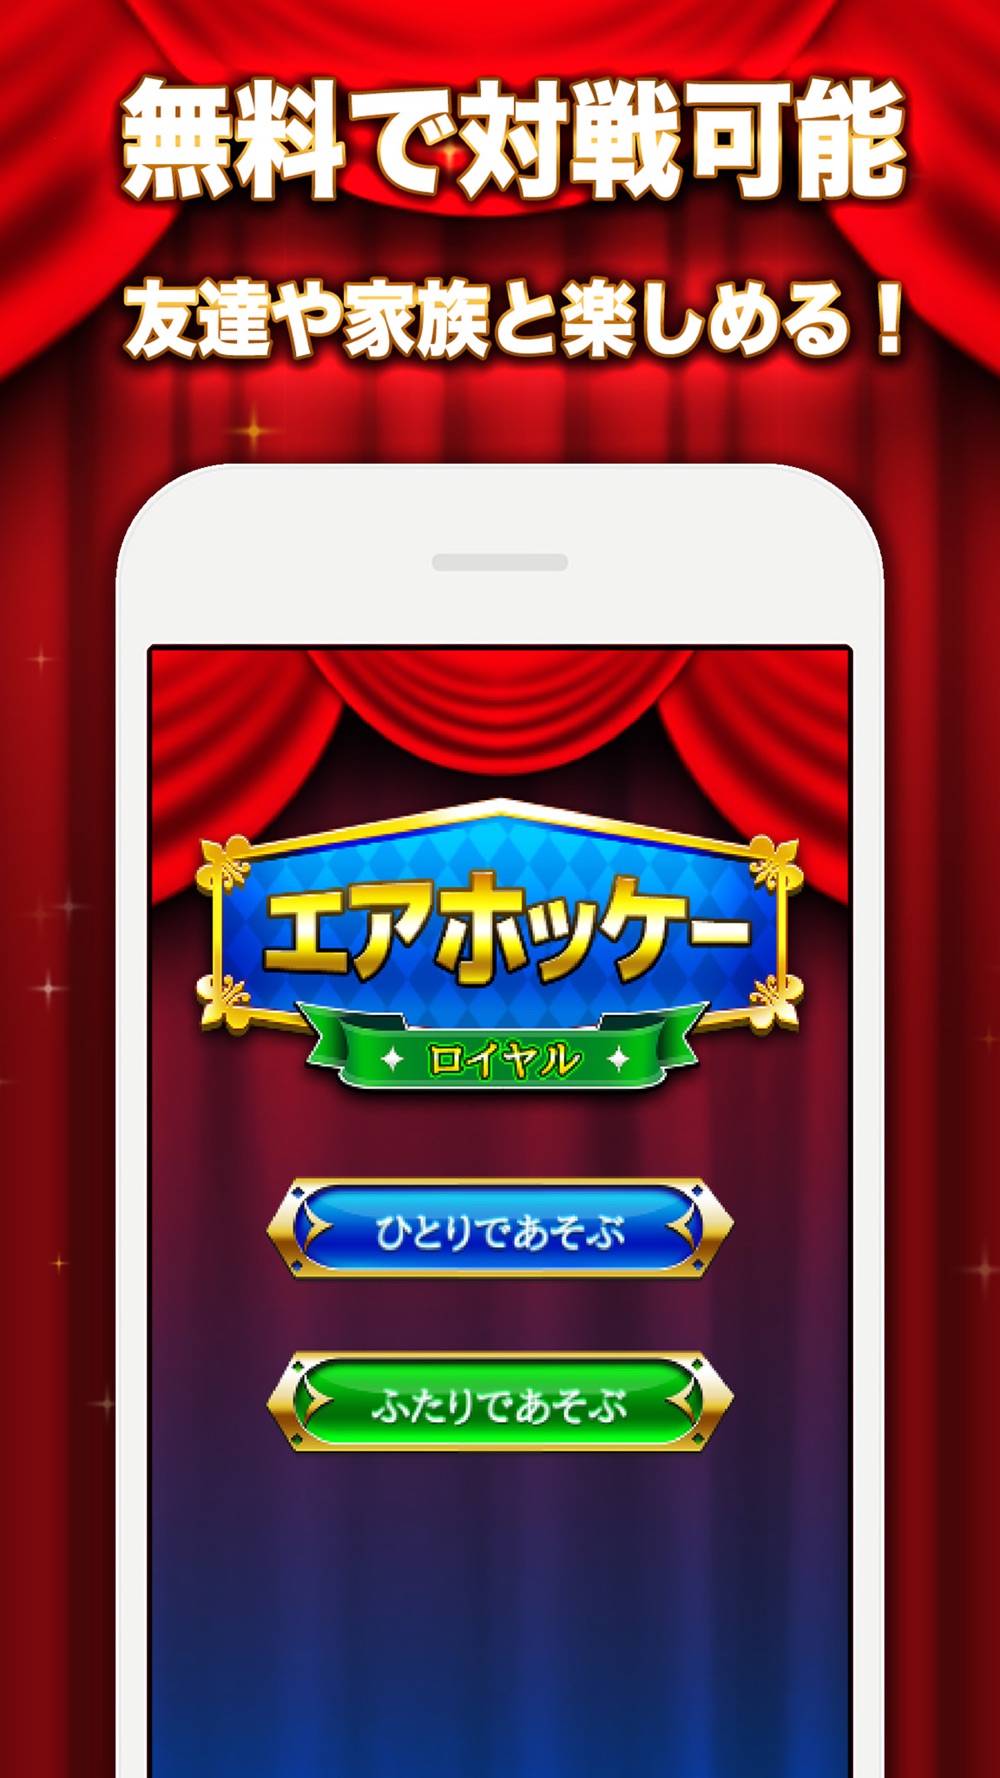 エアホッケー Royal 無料で2人対戦できる 定番 ゲーム Free Download App For Iphone Steprimo Com